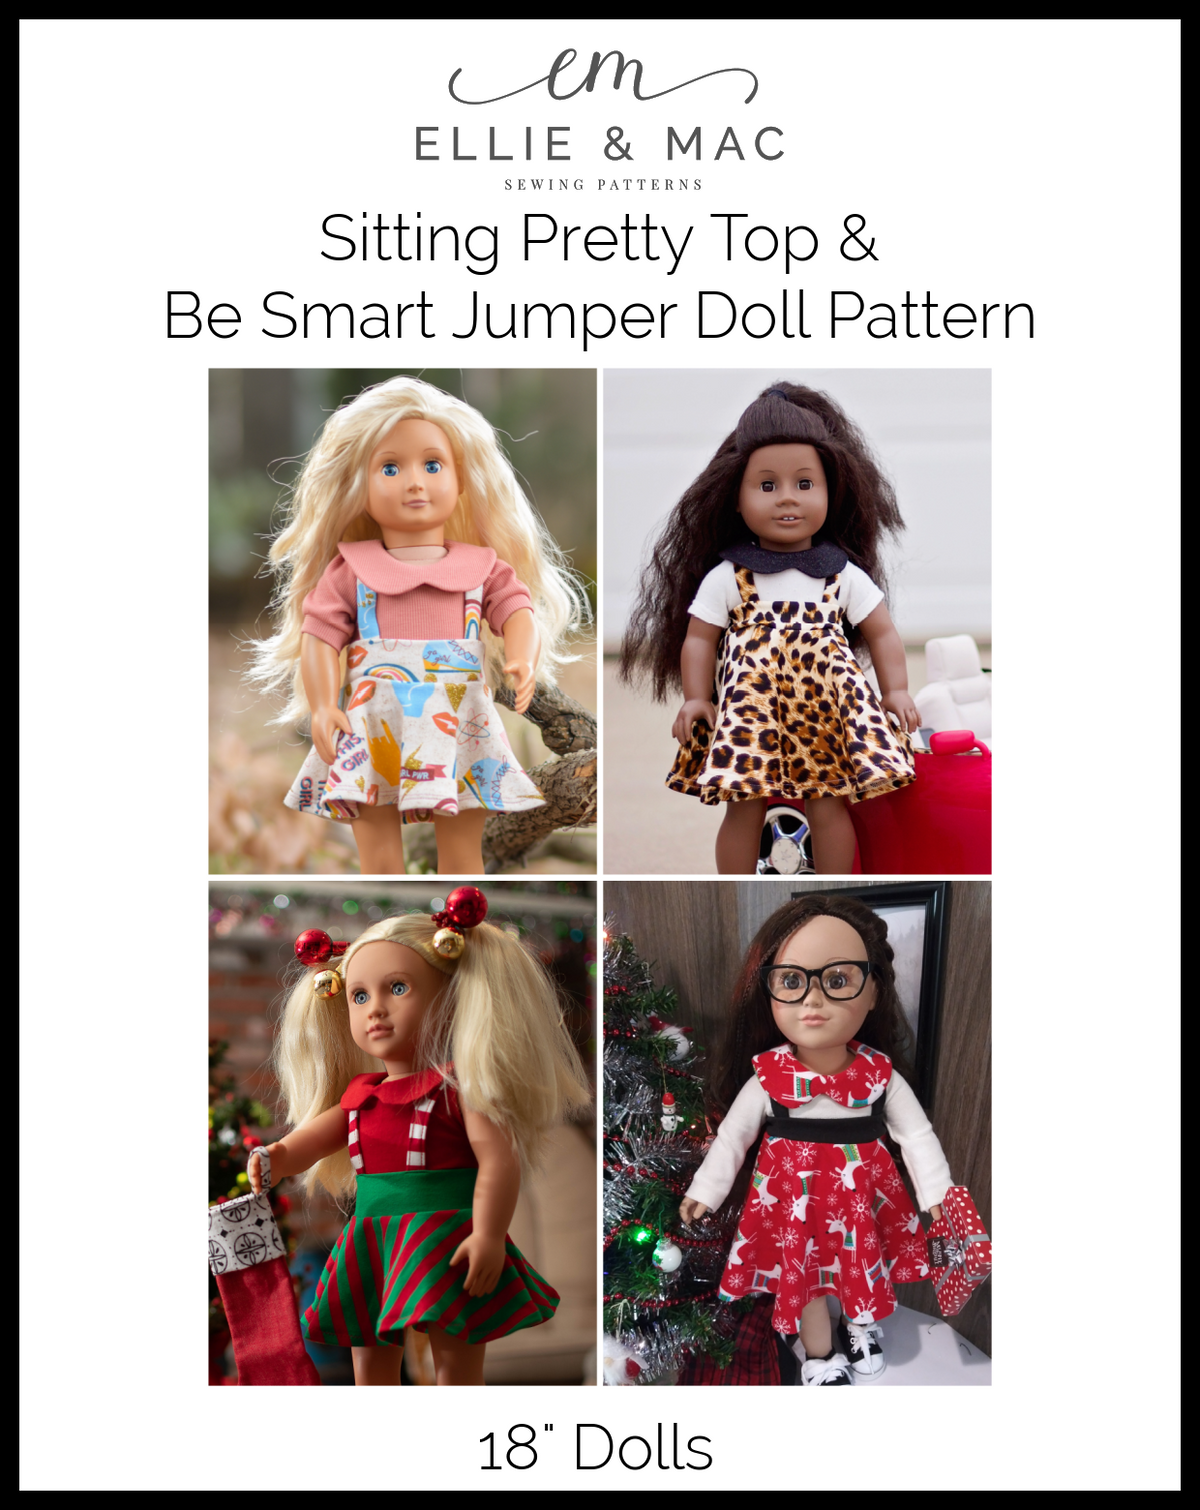 Sitting Pretty Top & Be Smart Jumper Doll Pattern